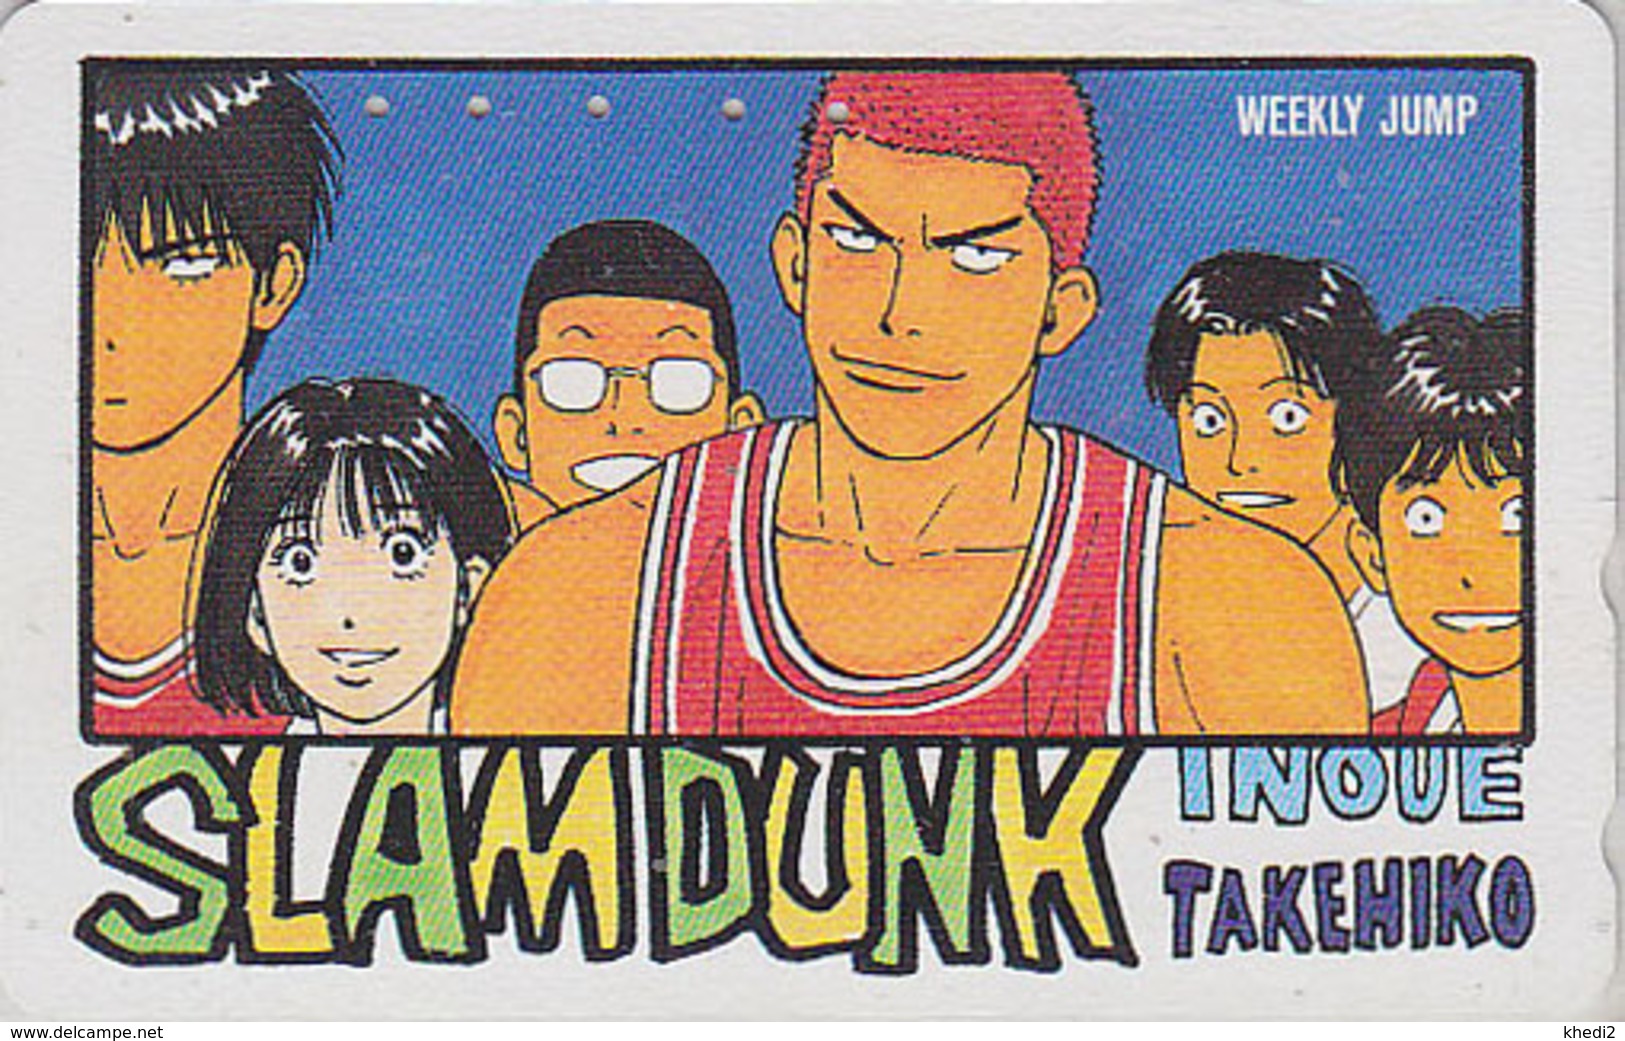 Télécarte Japon / 110-011 - MANGA - WEEKLY JUMP - SLAM DUNK - BASKET BALL - ANIME Japan Phonecard - 9437 - Comics